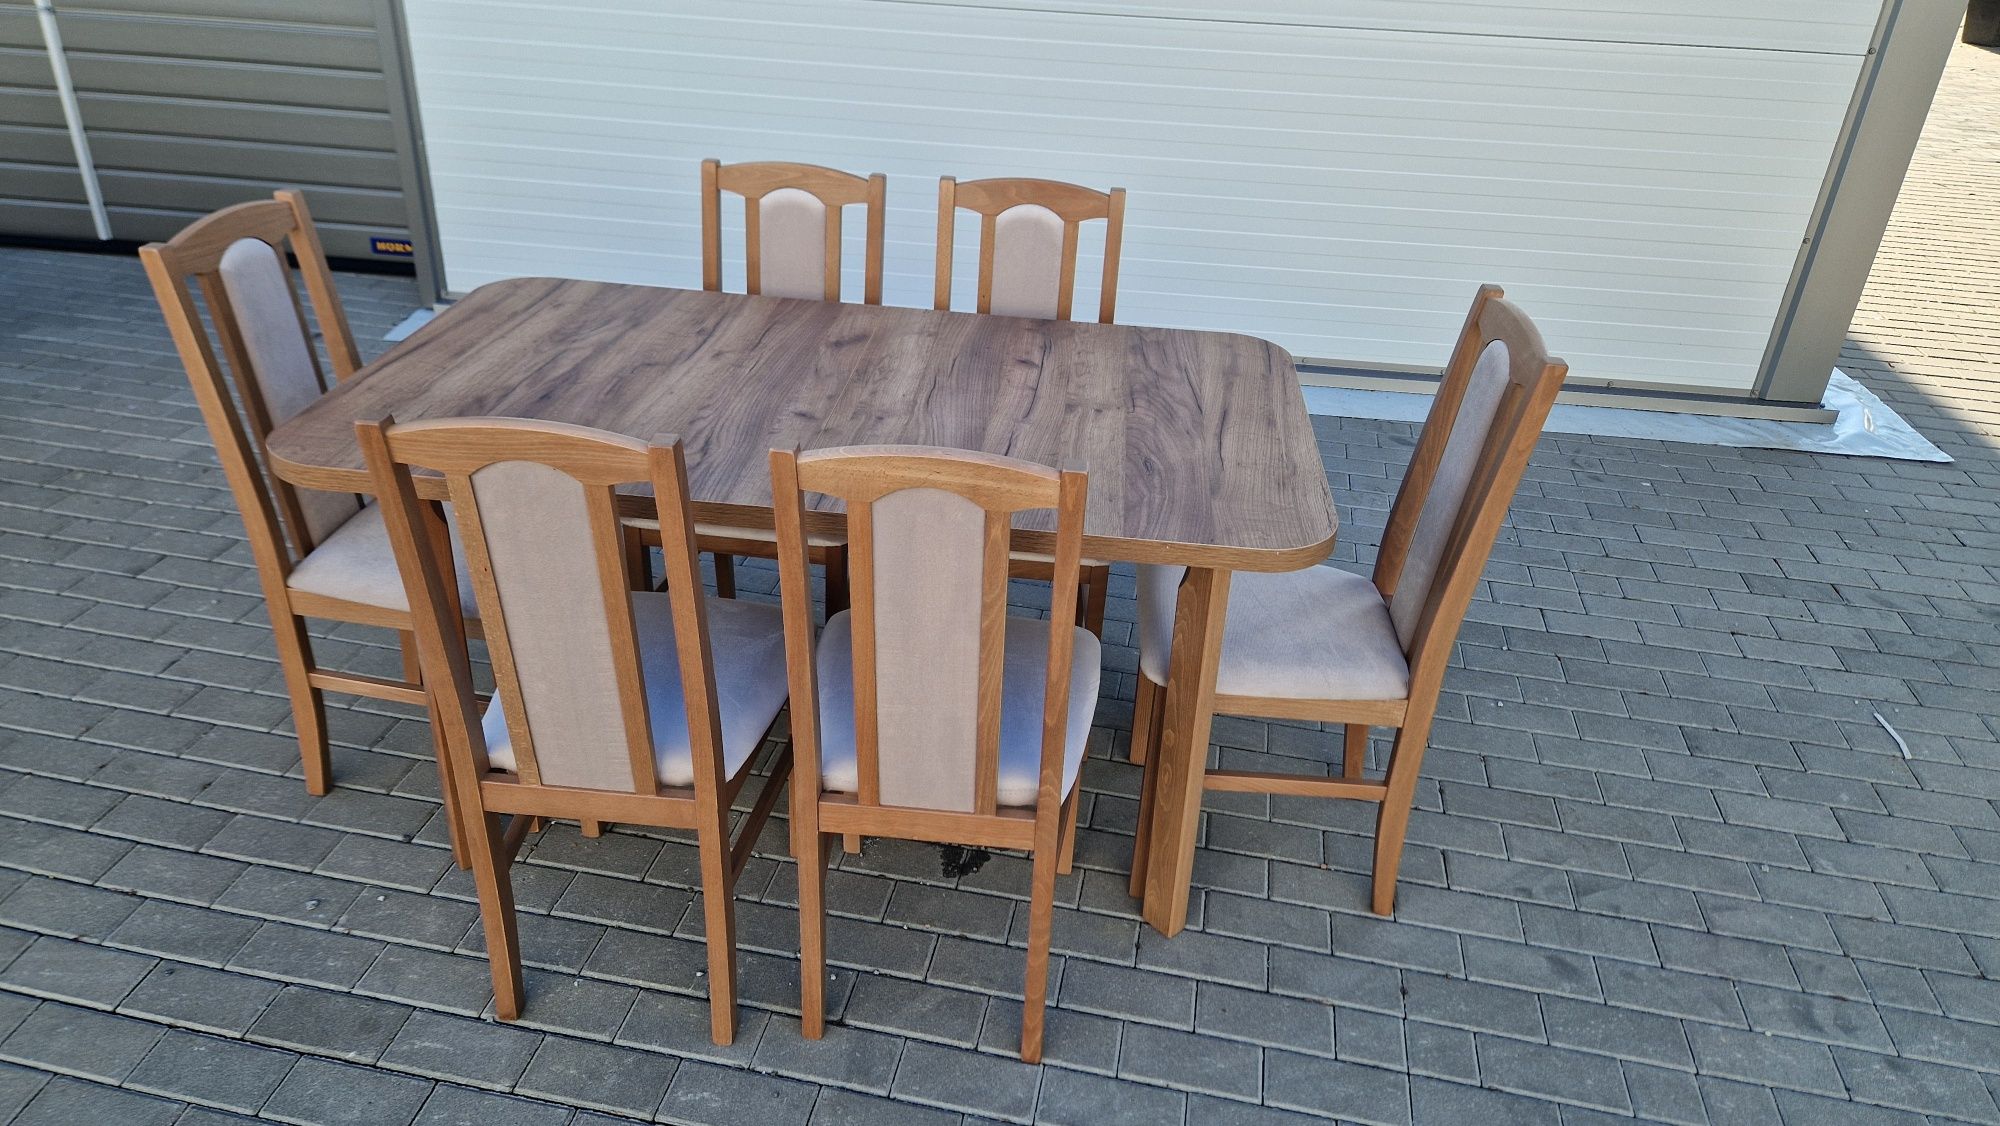 Nowe: Stół 80x140/180 + 6 krzeseł, orzech jasny + latte, dostawa PL